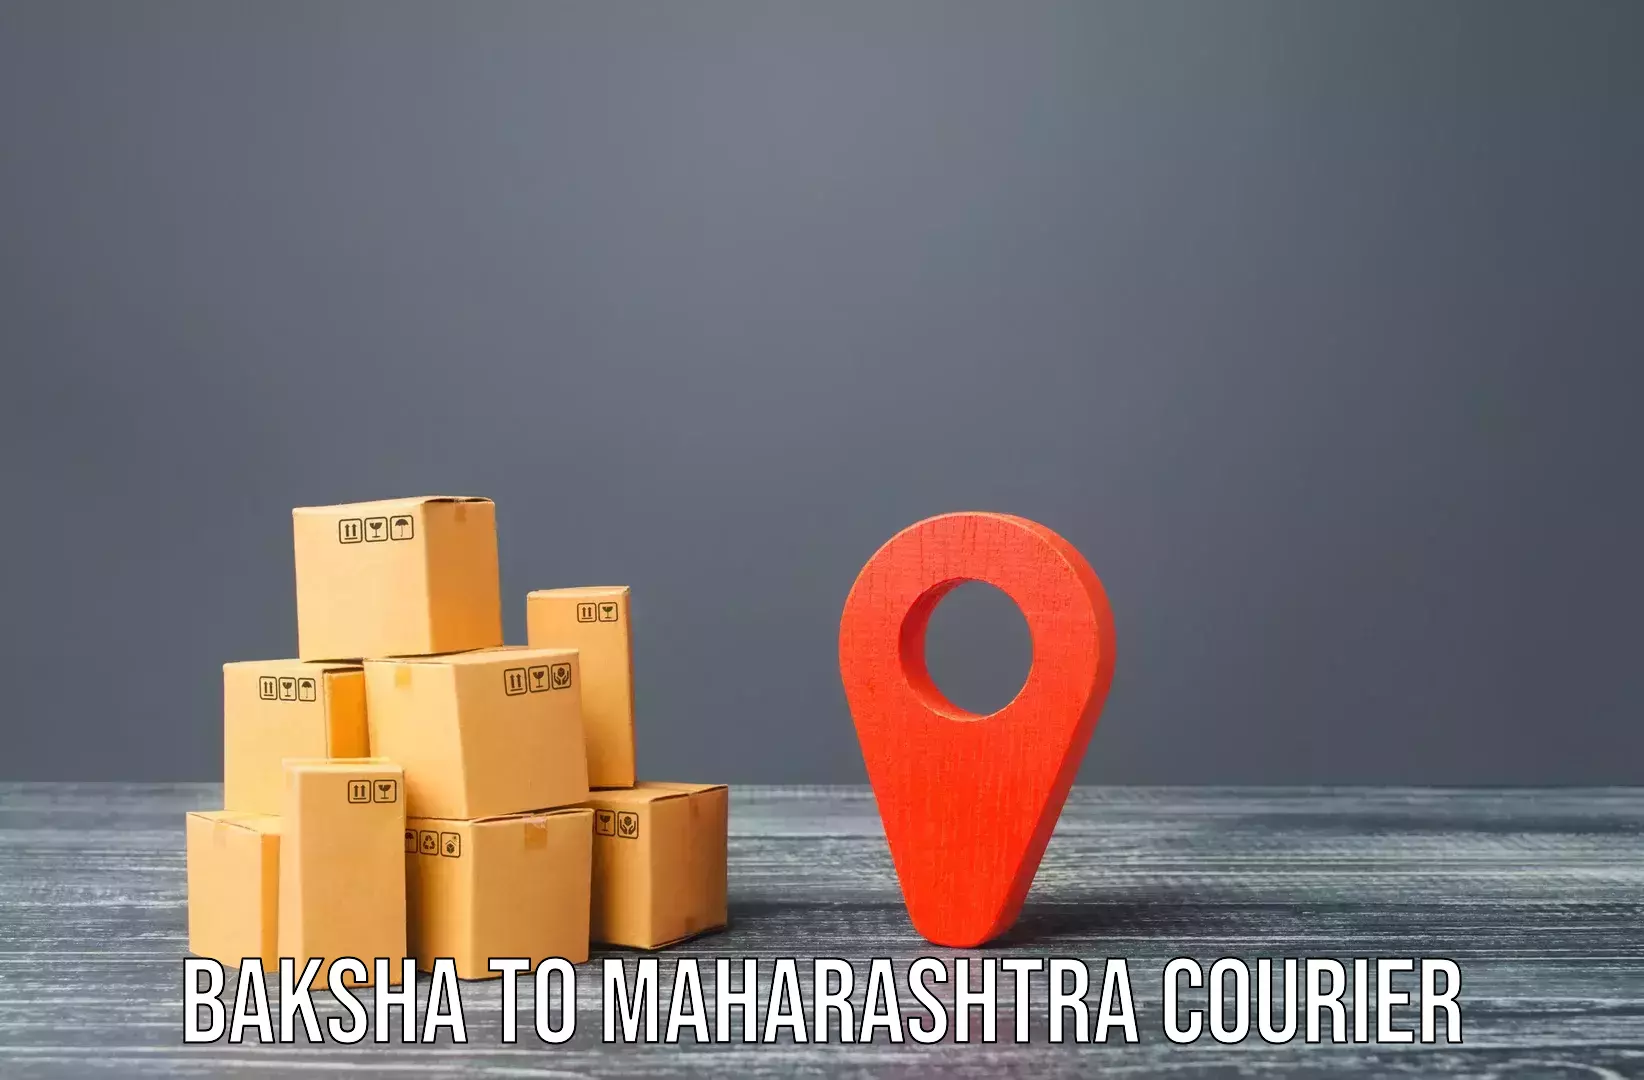 Quick household relocation Baksha to Tata Institute of Social Sciences Mumbai